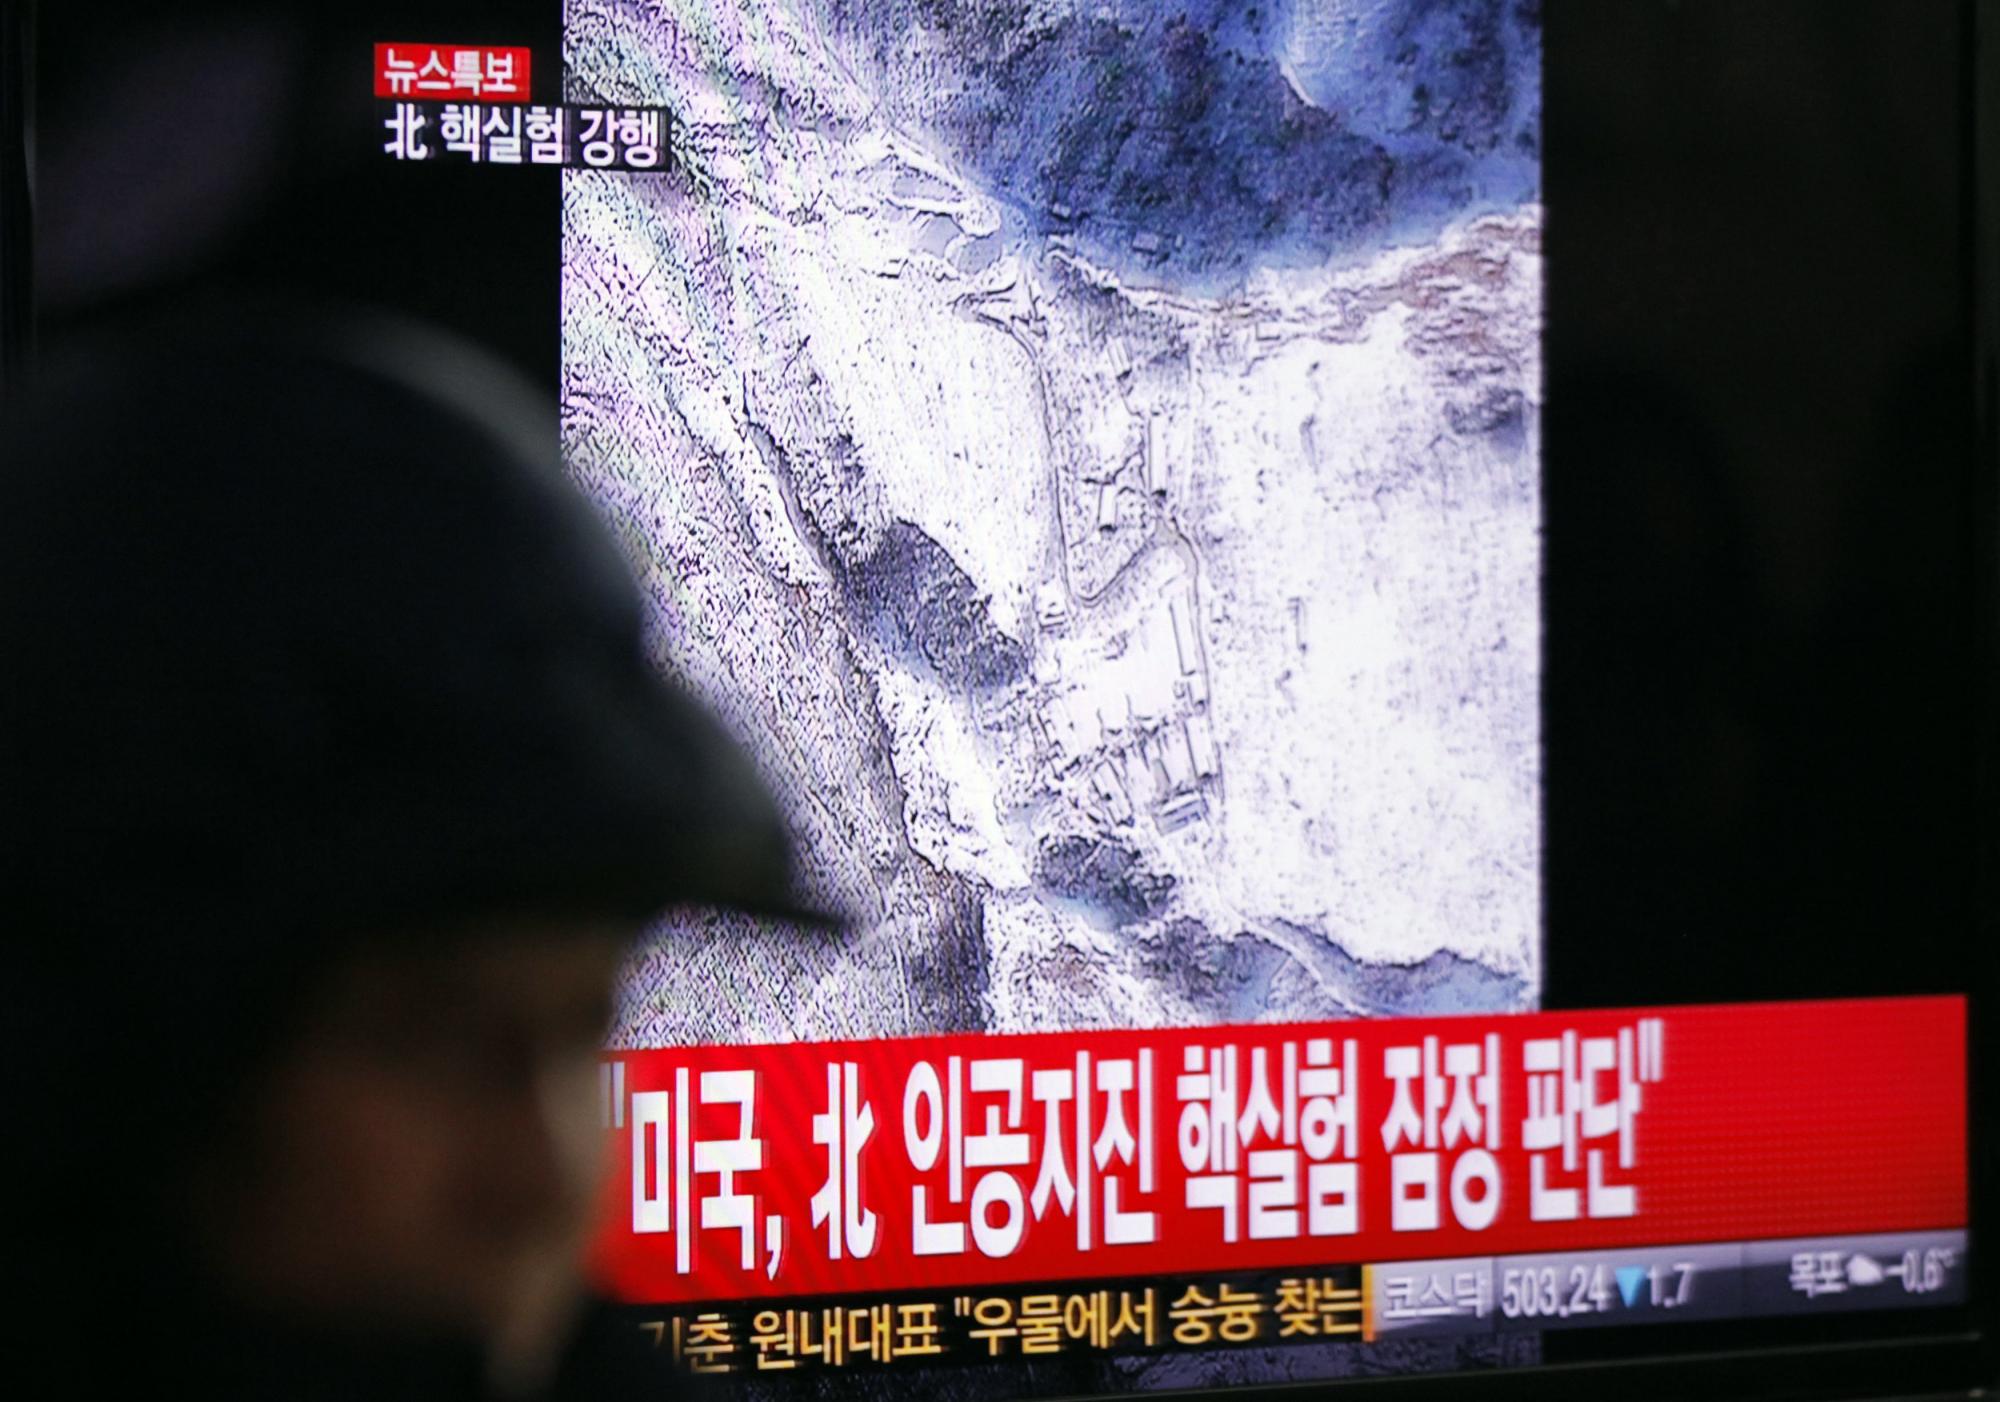 朝鲜宣布成功进行第三次核试验 自称有利于地区和平